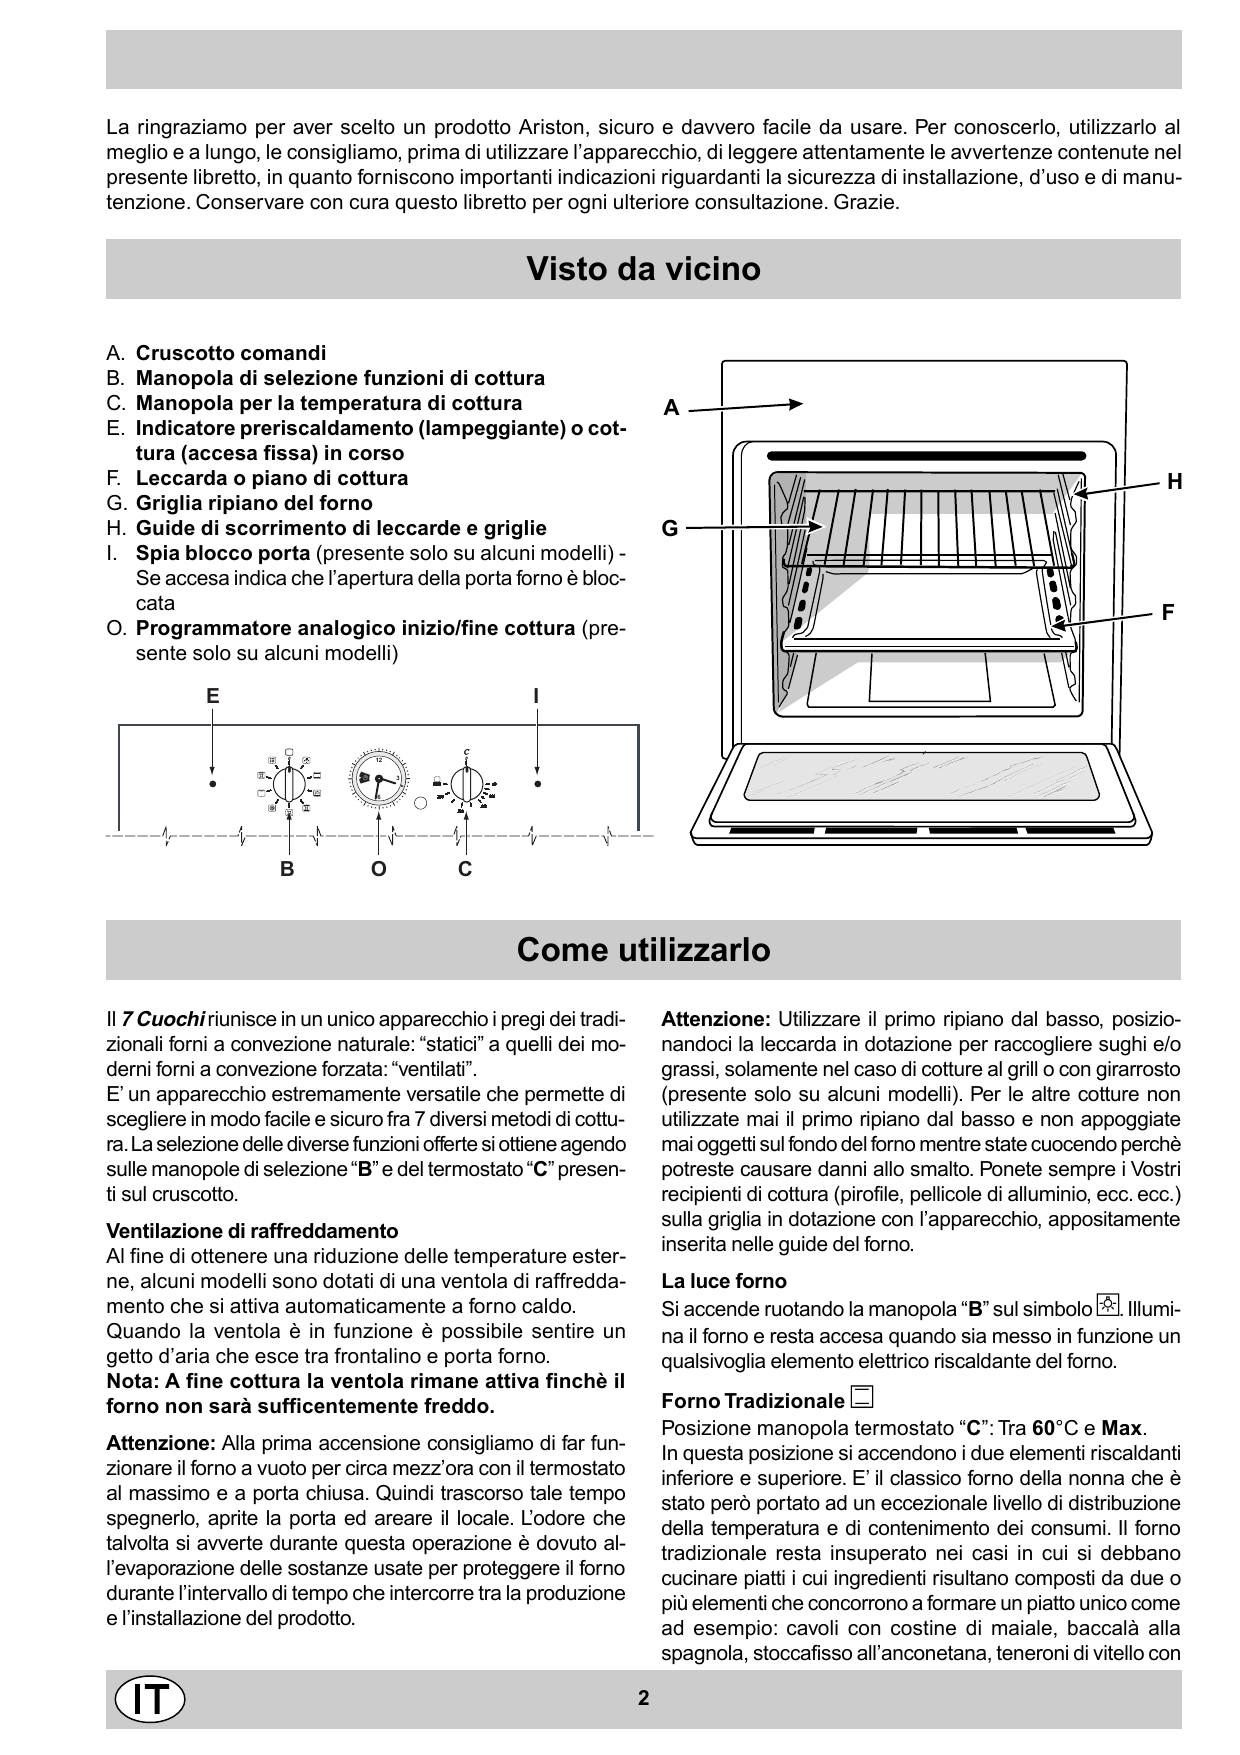 Духовка Аристон электрическая model fb 512 инструкция